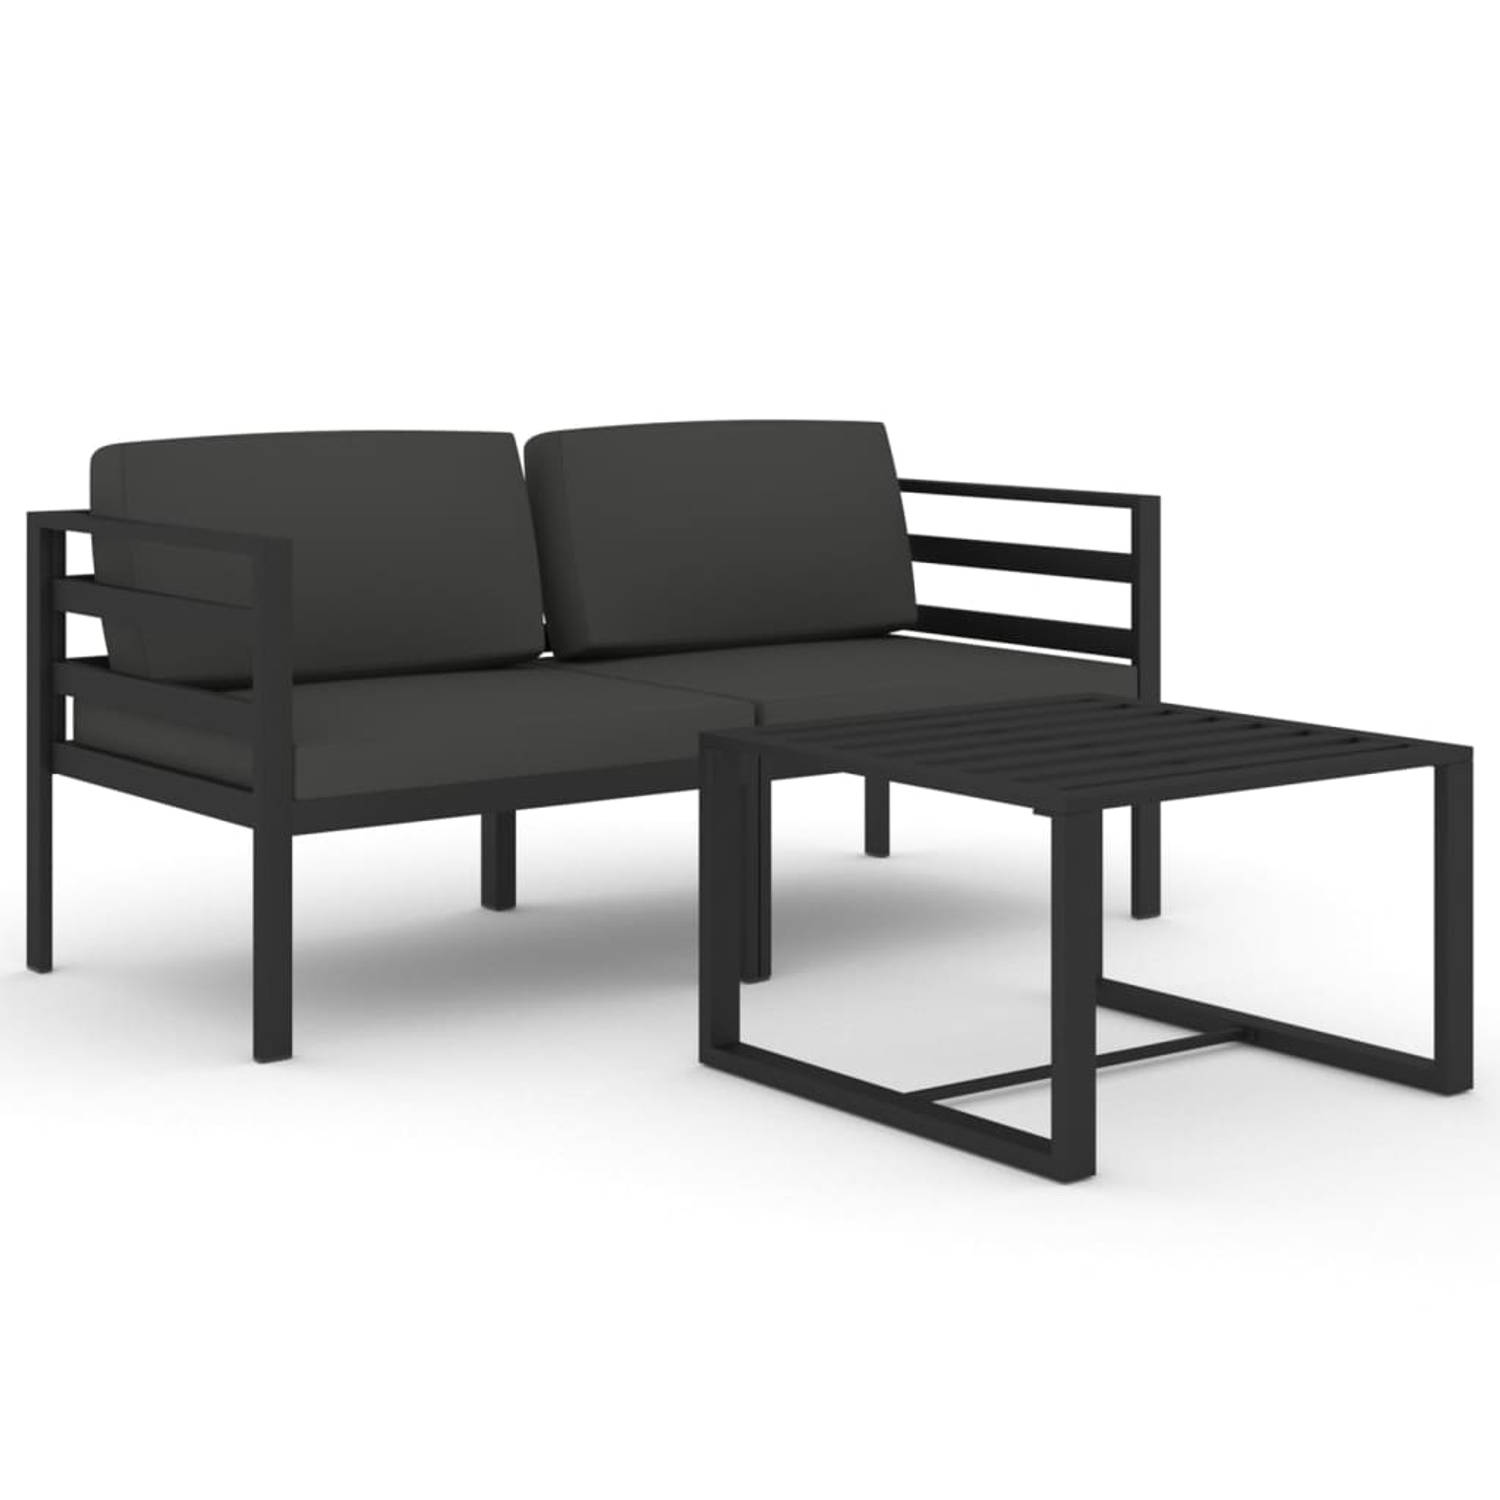 The Living Store Loungeset - Aluminium - Antraciet - Modulair design - 70x70x64.5 cm